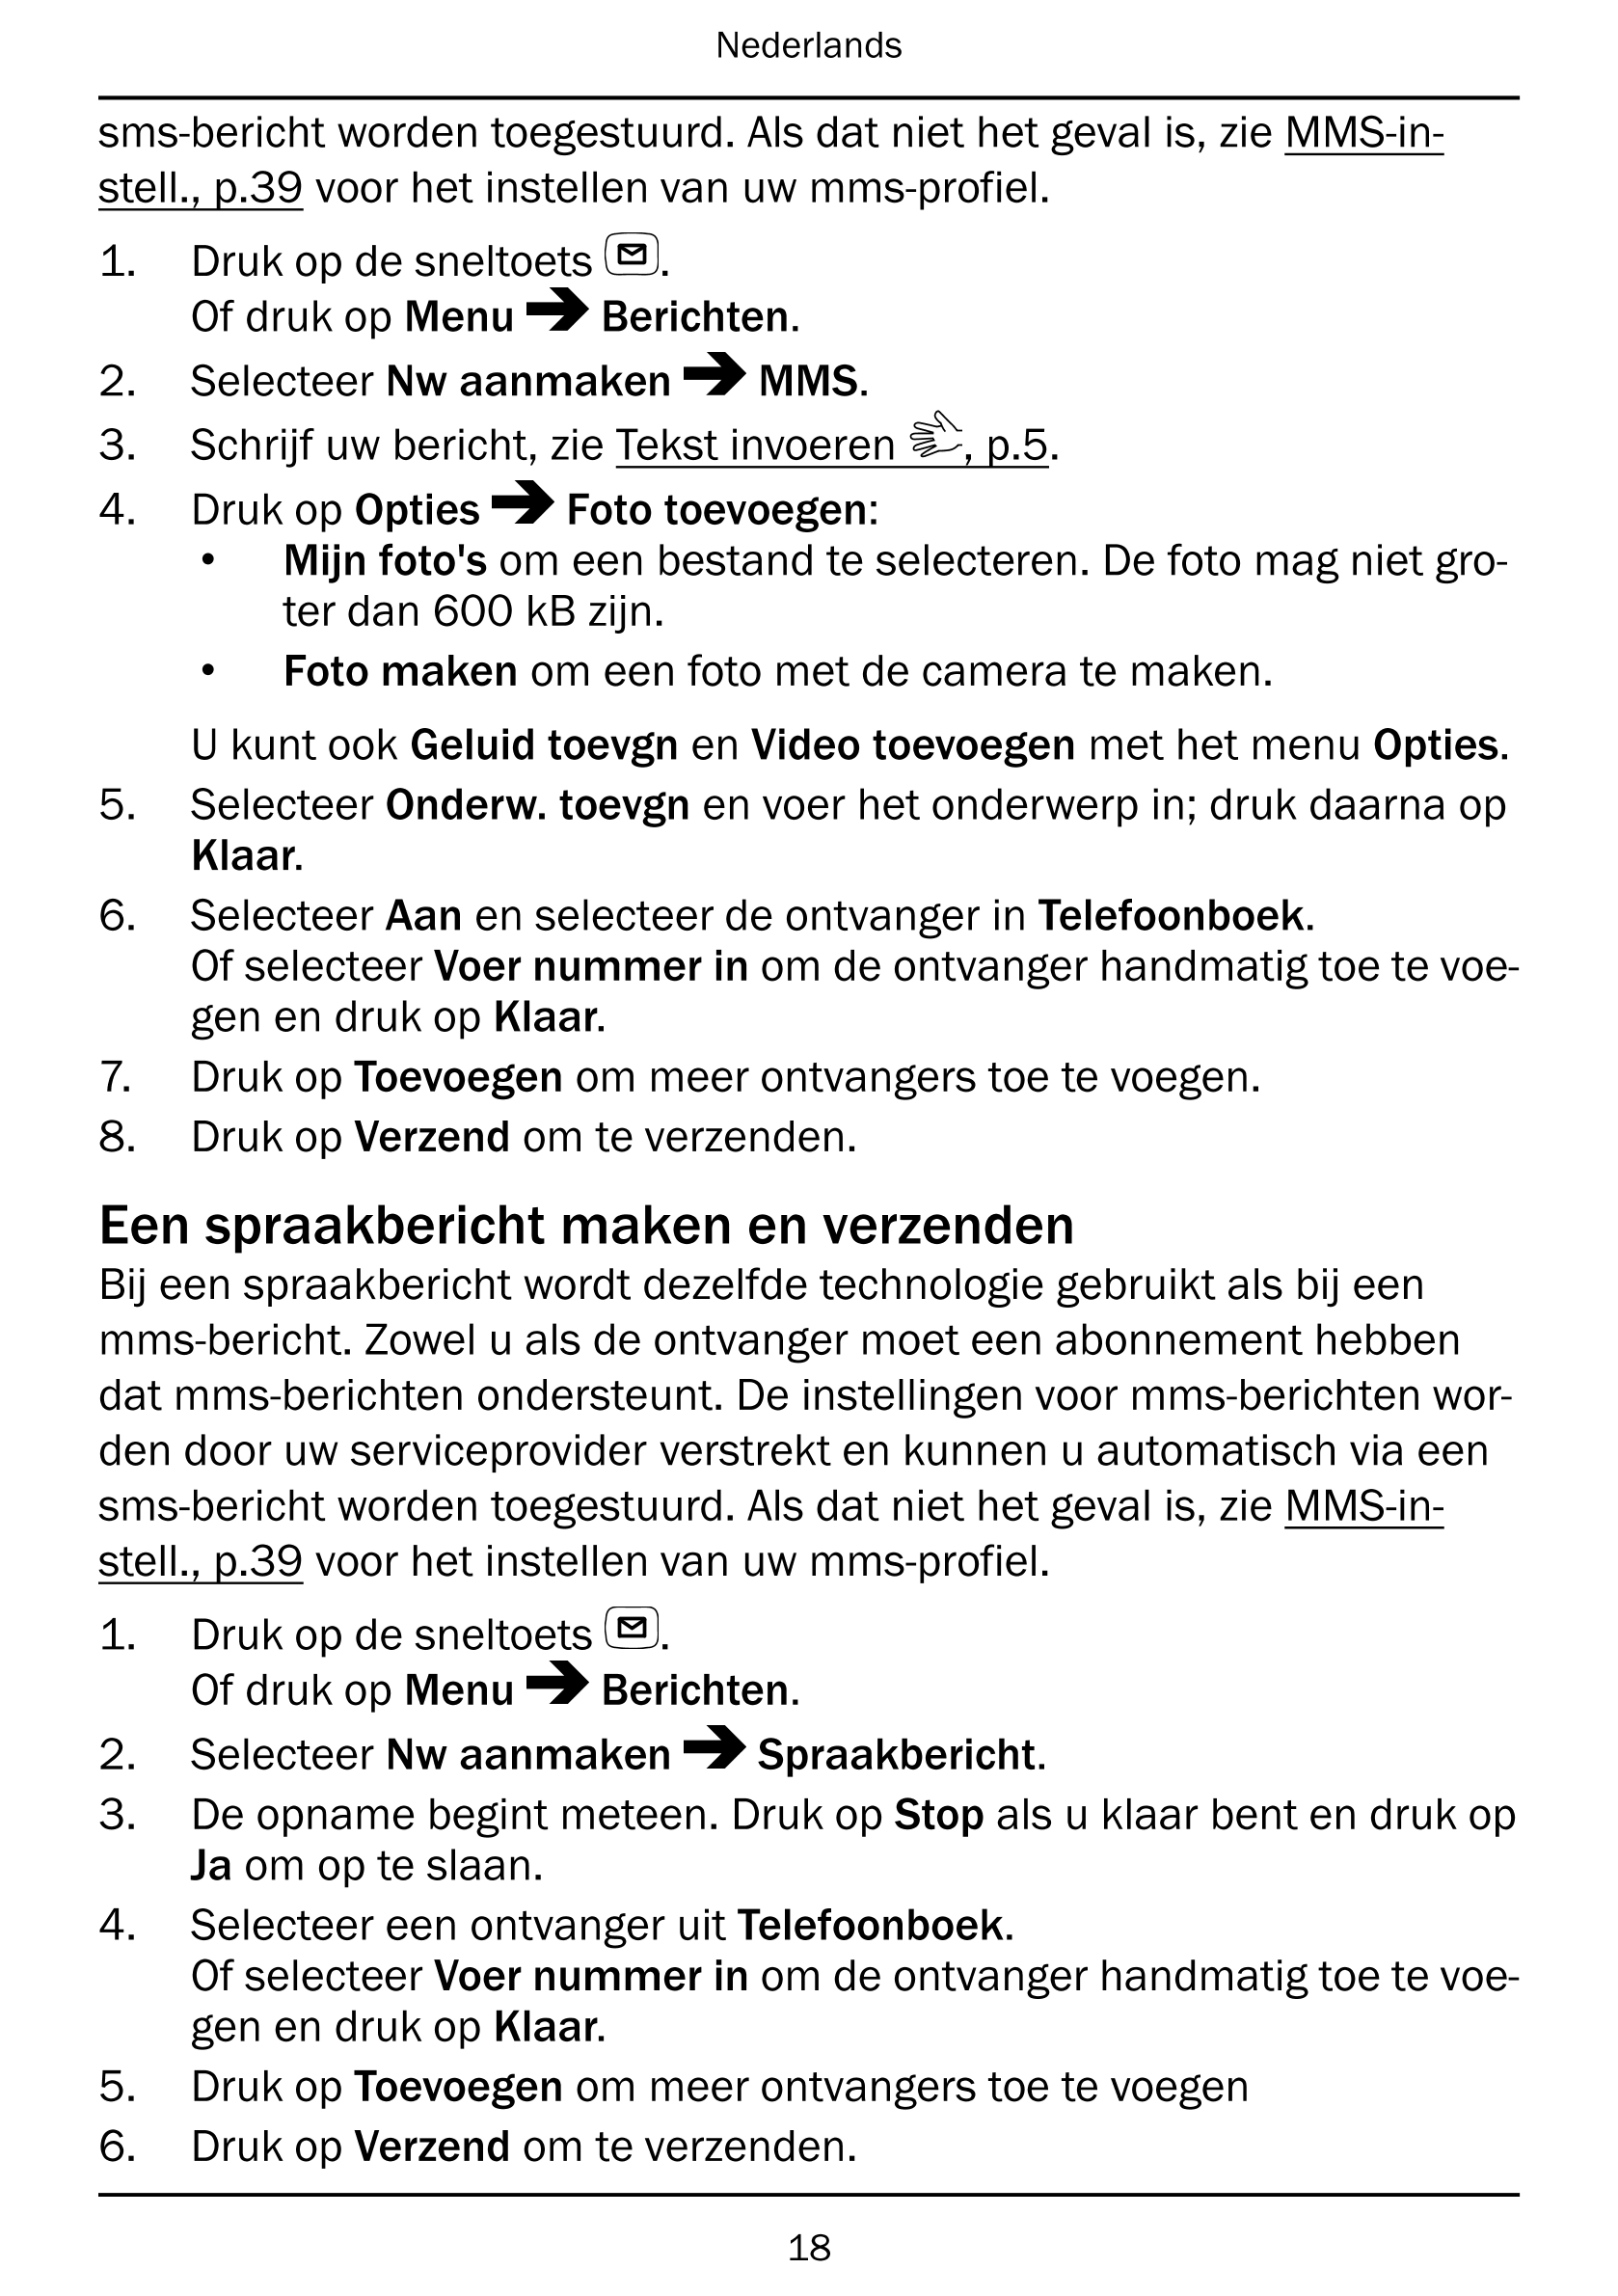 Nederlands
sms-bericht worden toegestuurd. Als dat niet het geval is, zie MMS-in-
stell., p.39 voor het instellen van uw mms-pro